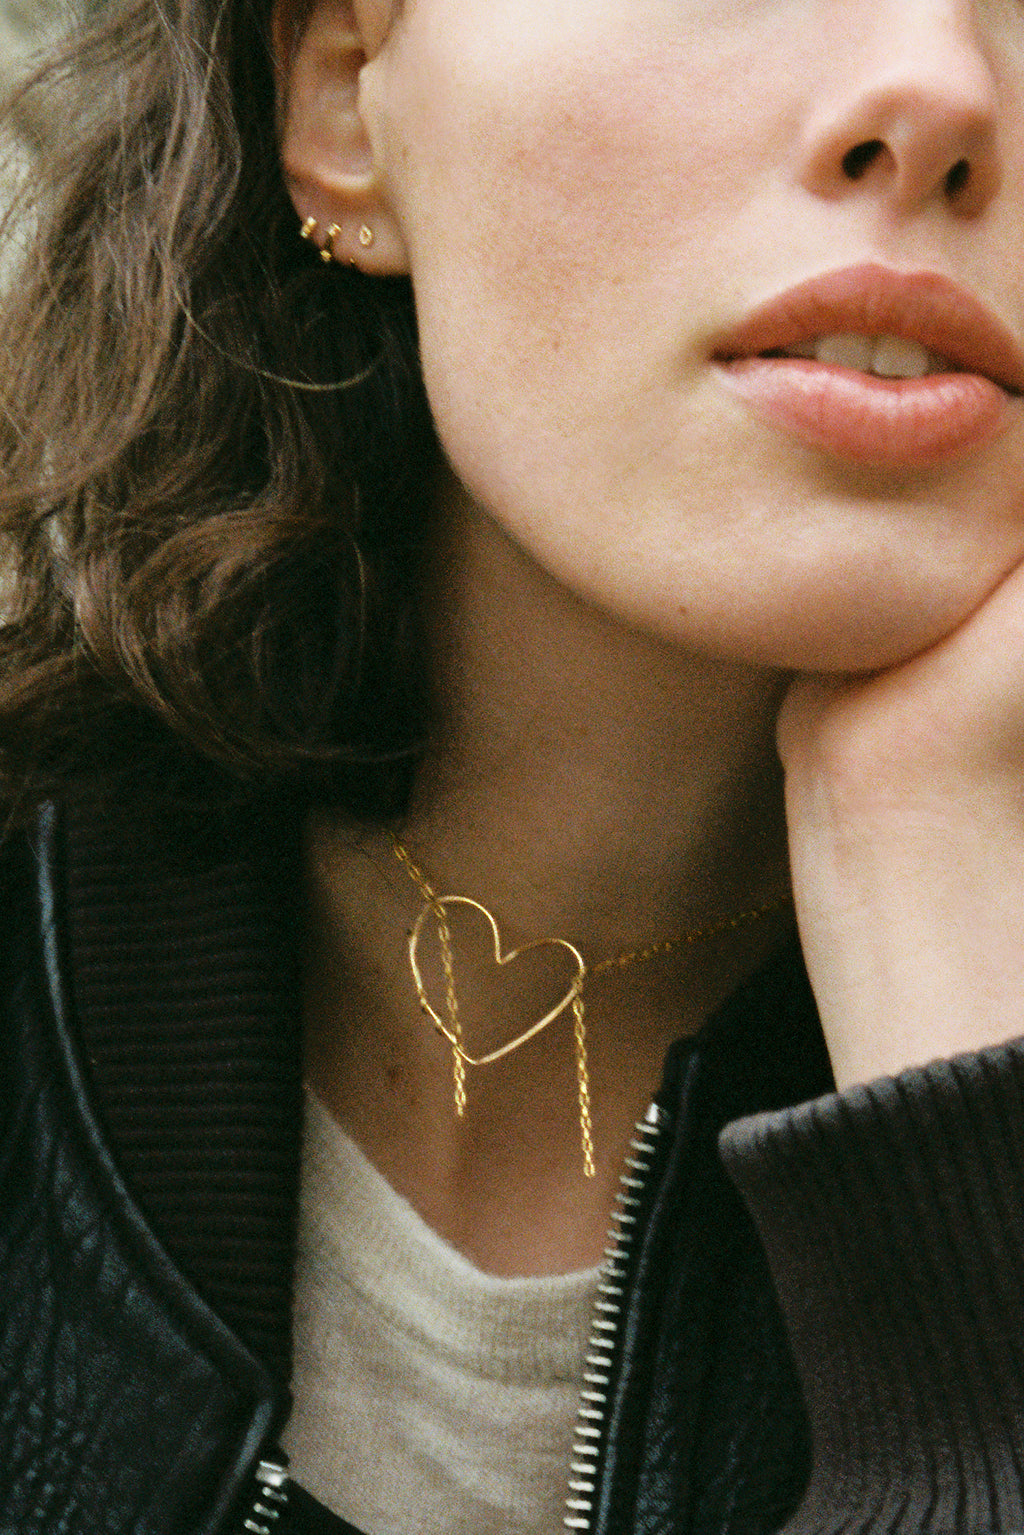 Fine ligne d'amour gold necklace